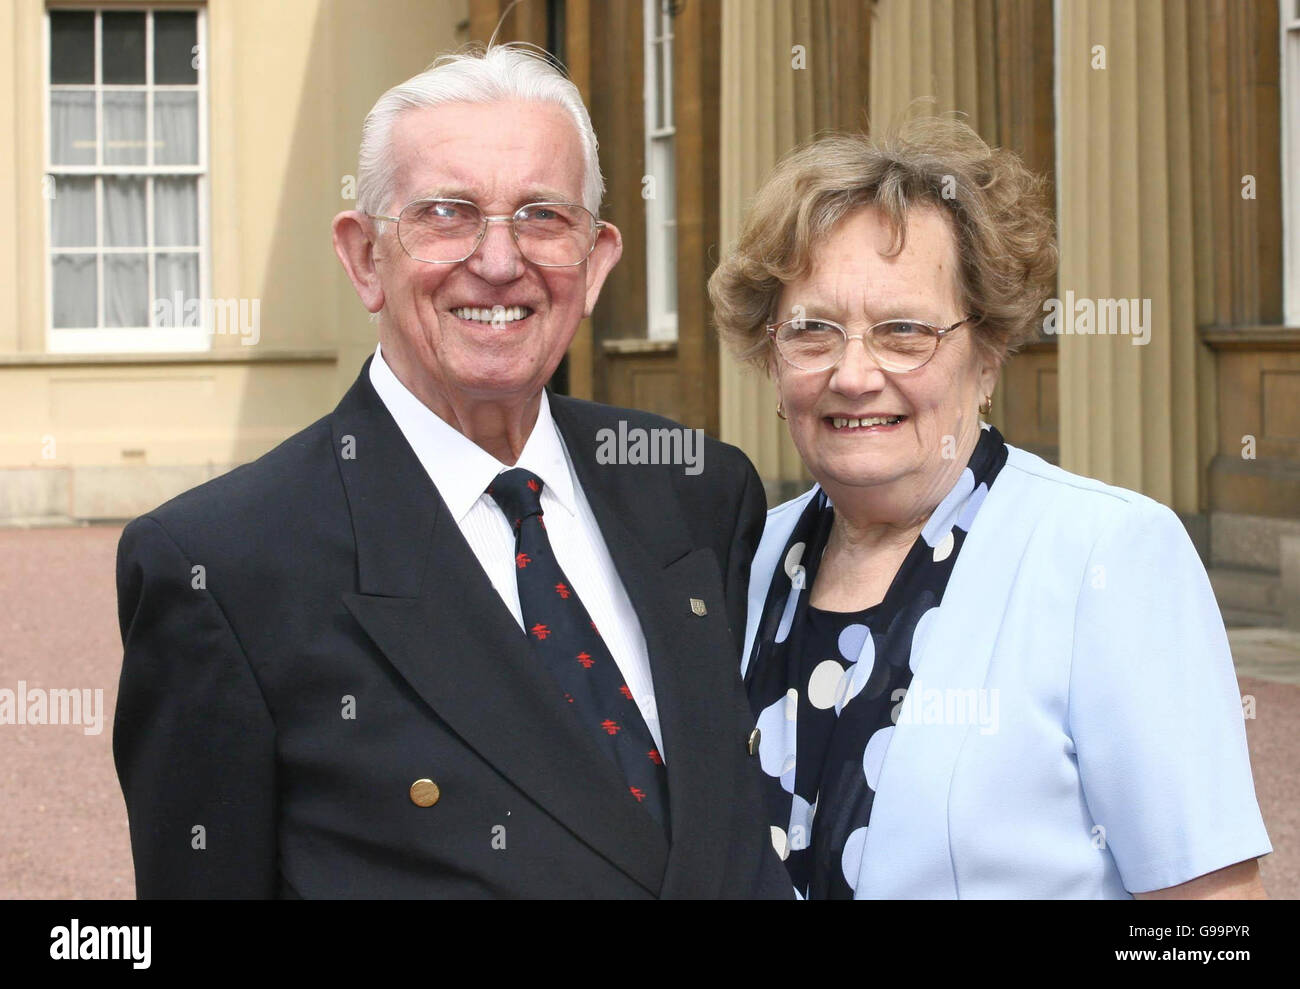 Ted Broszek verlässt zusammen mit seiner Frau Norma aus Bexley Heath, Kent, den Buckingham Palace, nach einem Lunch-Empfang mit der britischen Königin Elzabeth II. Stockfoto